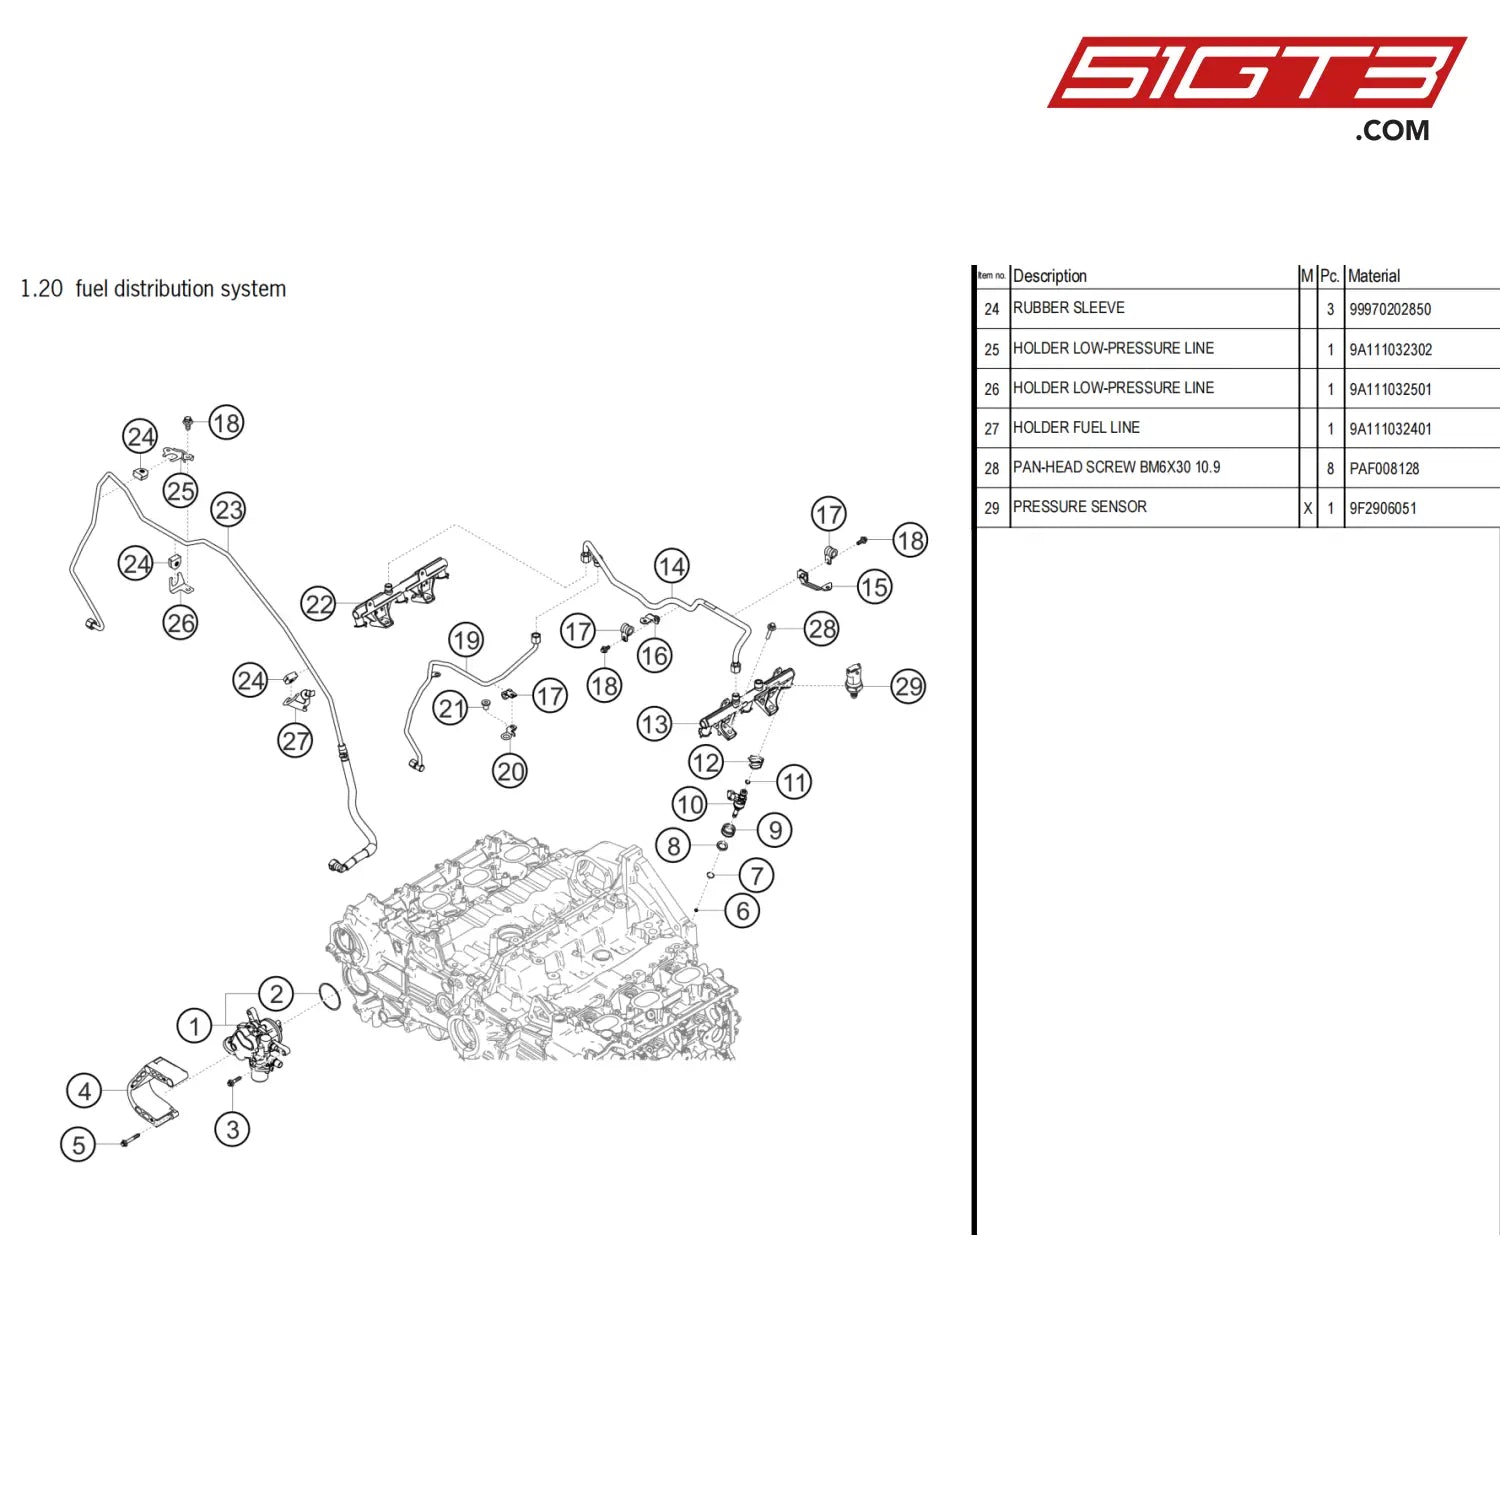 As High-Press.line Pump/T-Fitting - 9A111009502 [Porsche 718 Cayman Gt4 Clubsport] Fuel Distribution